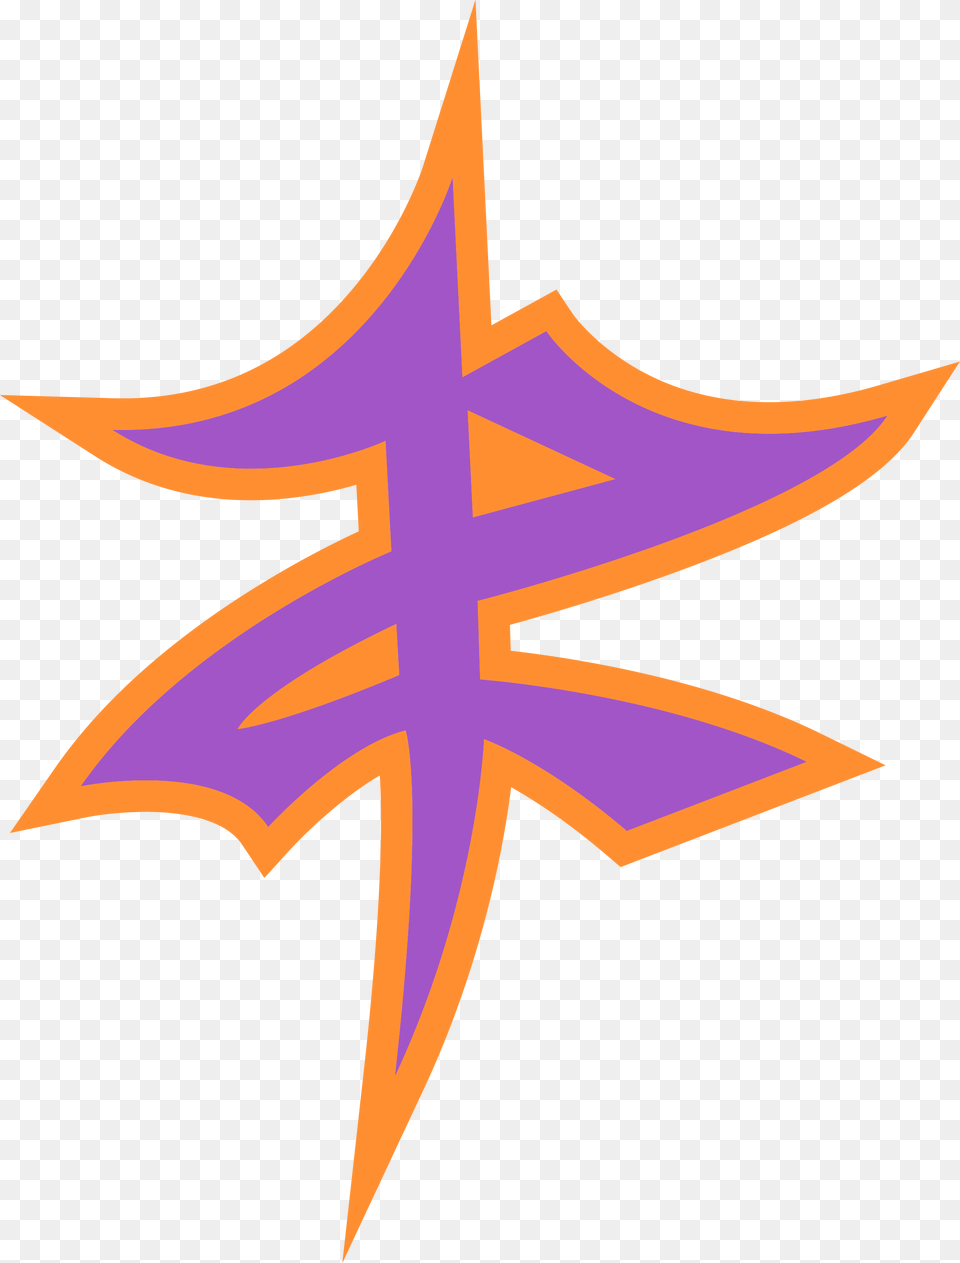 Wwe Zack Ryder Logo, Star Symbol, Symbol, Cross, Leaf Free Png Download